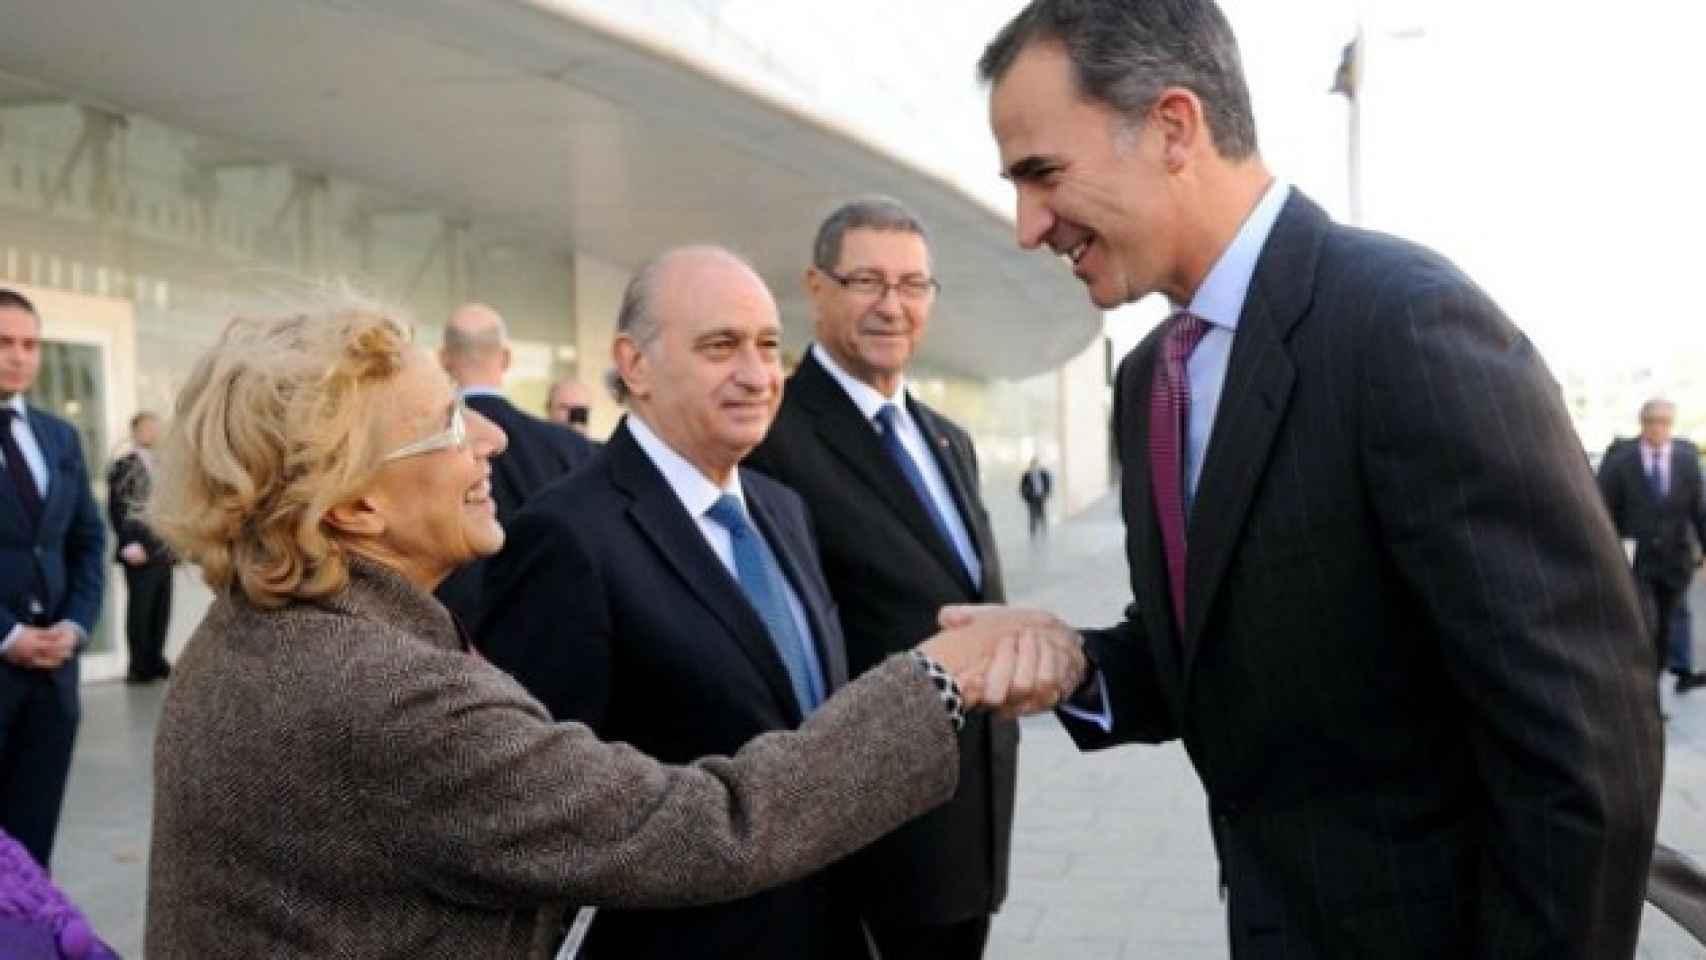 La alcaldesa de Madrid, Manuela Carmena, junto al jefe del Estado, Felipe VI, y el ministro del Interior en funciones, Jorge Fernández.